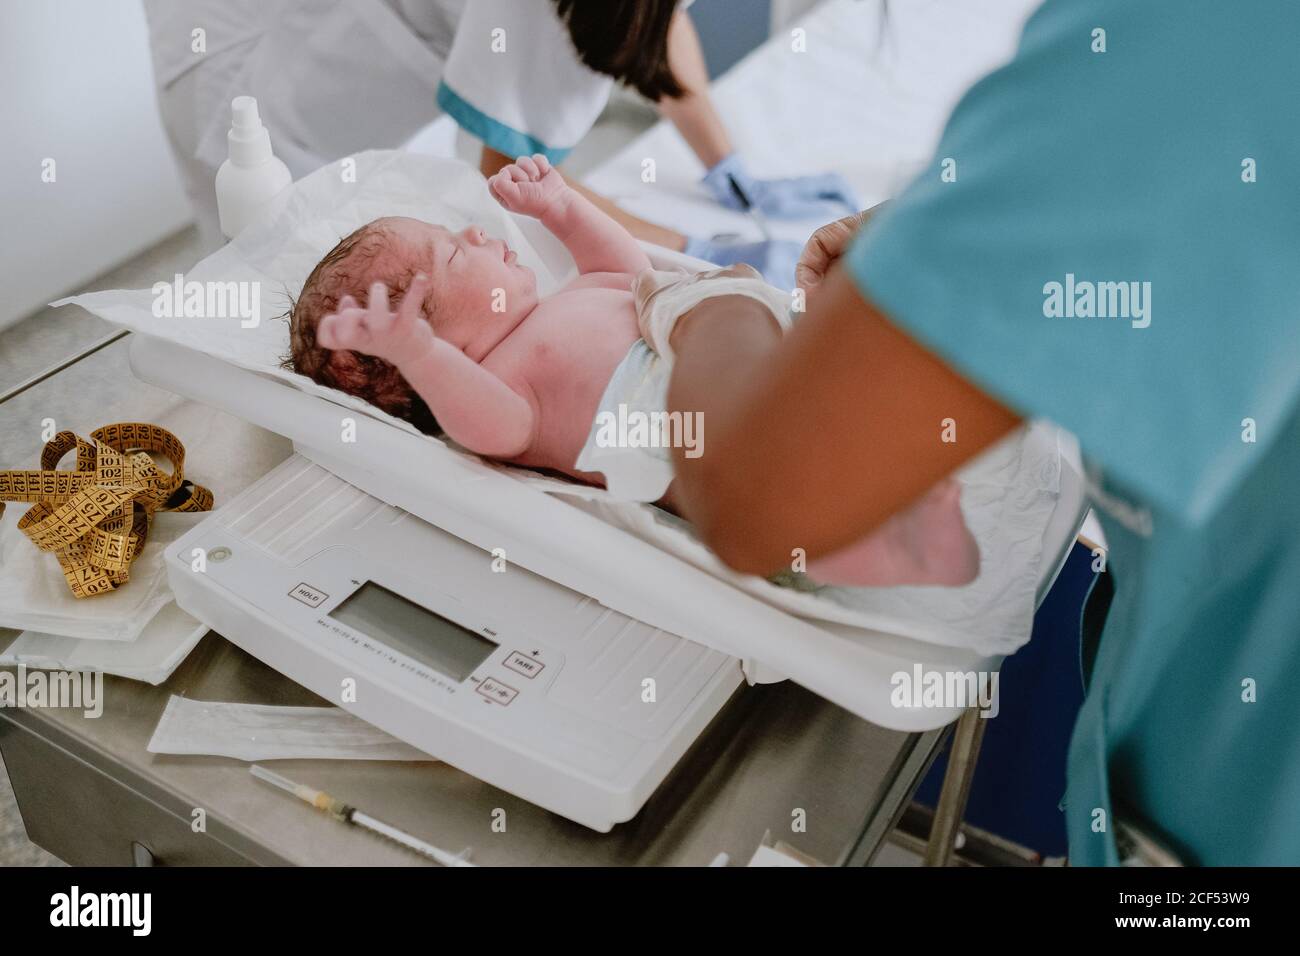 Vue du dessus du poids du nouveau-né par un spécialiste médical de la culture bébé à l'échelle dans un hôpital moderne Banque D'Images